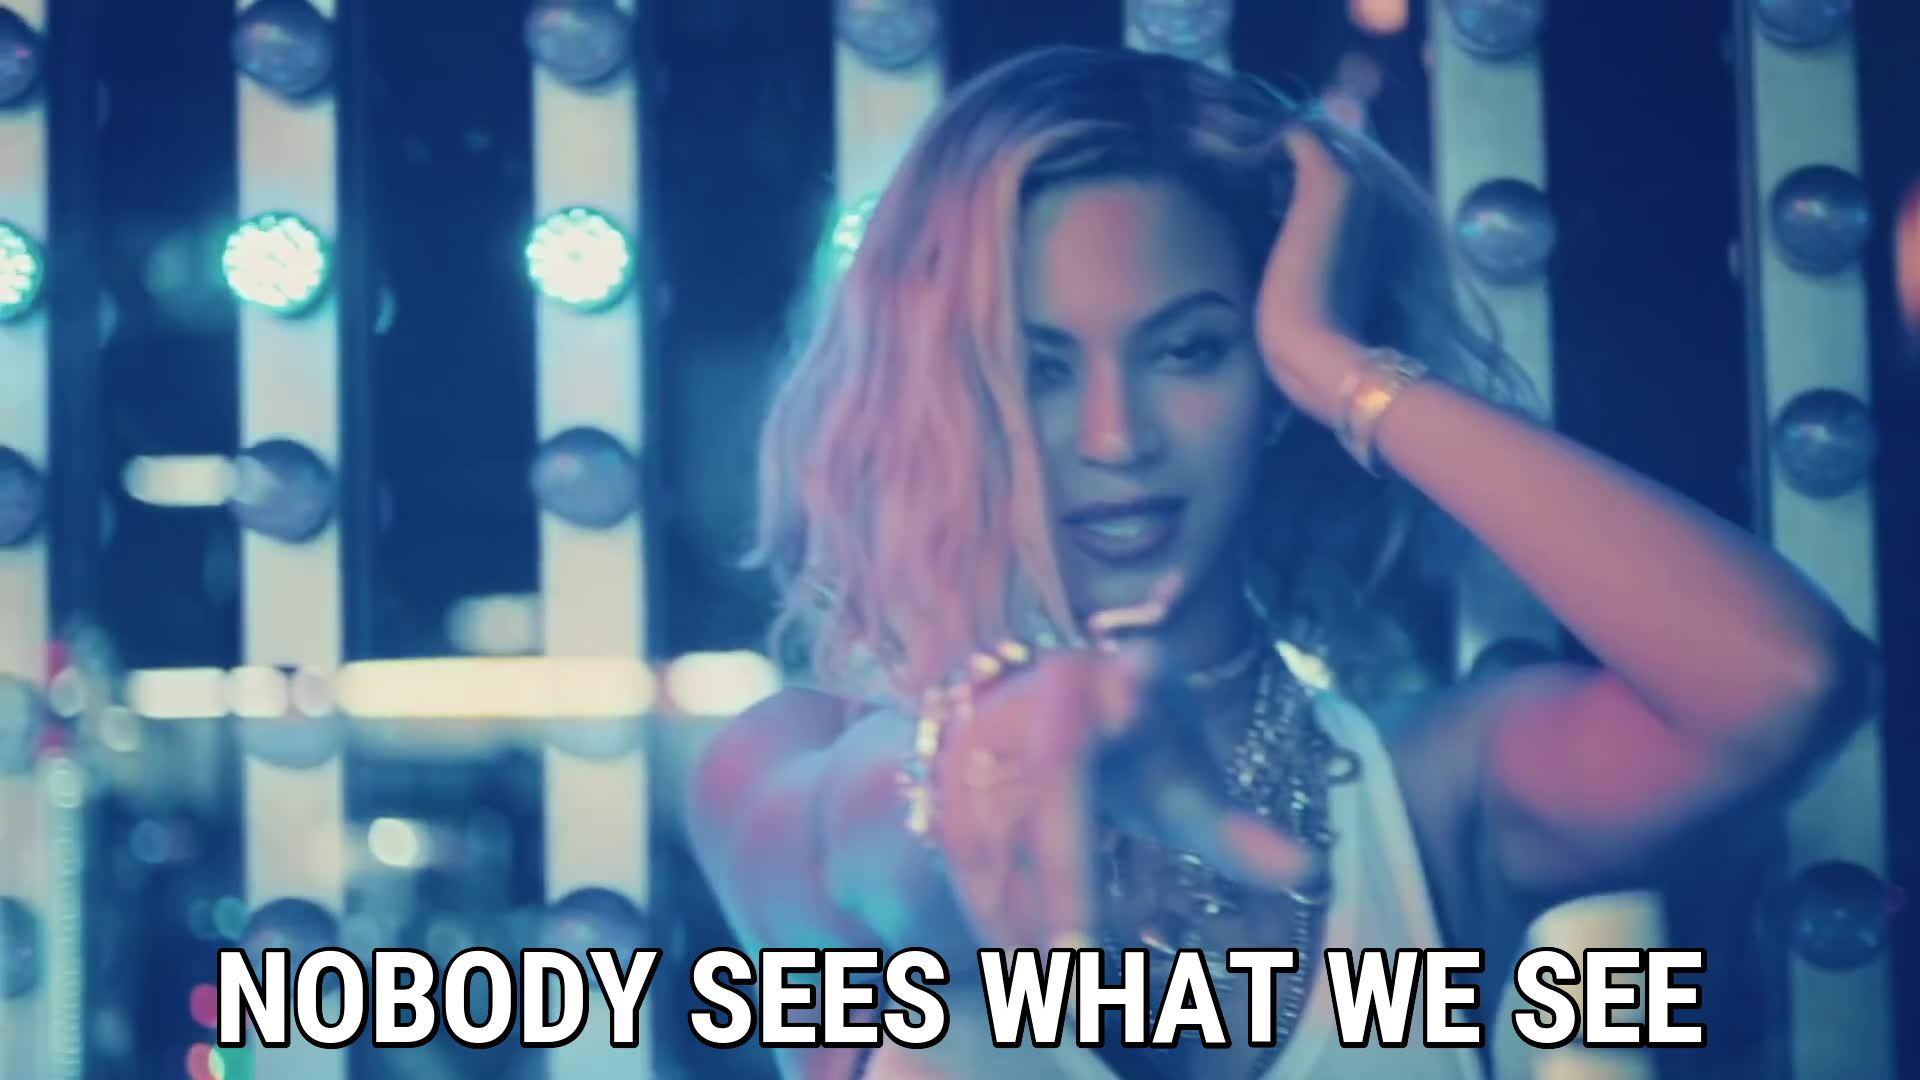 XO lyrics Beyoncé song in image